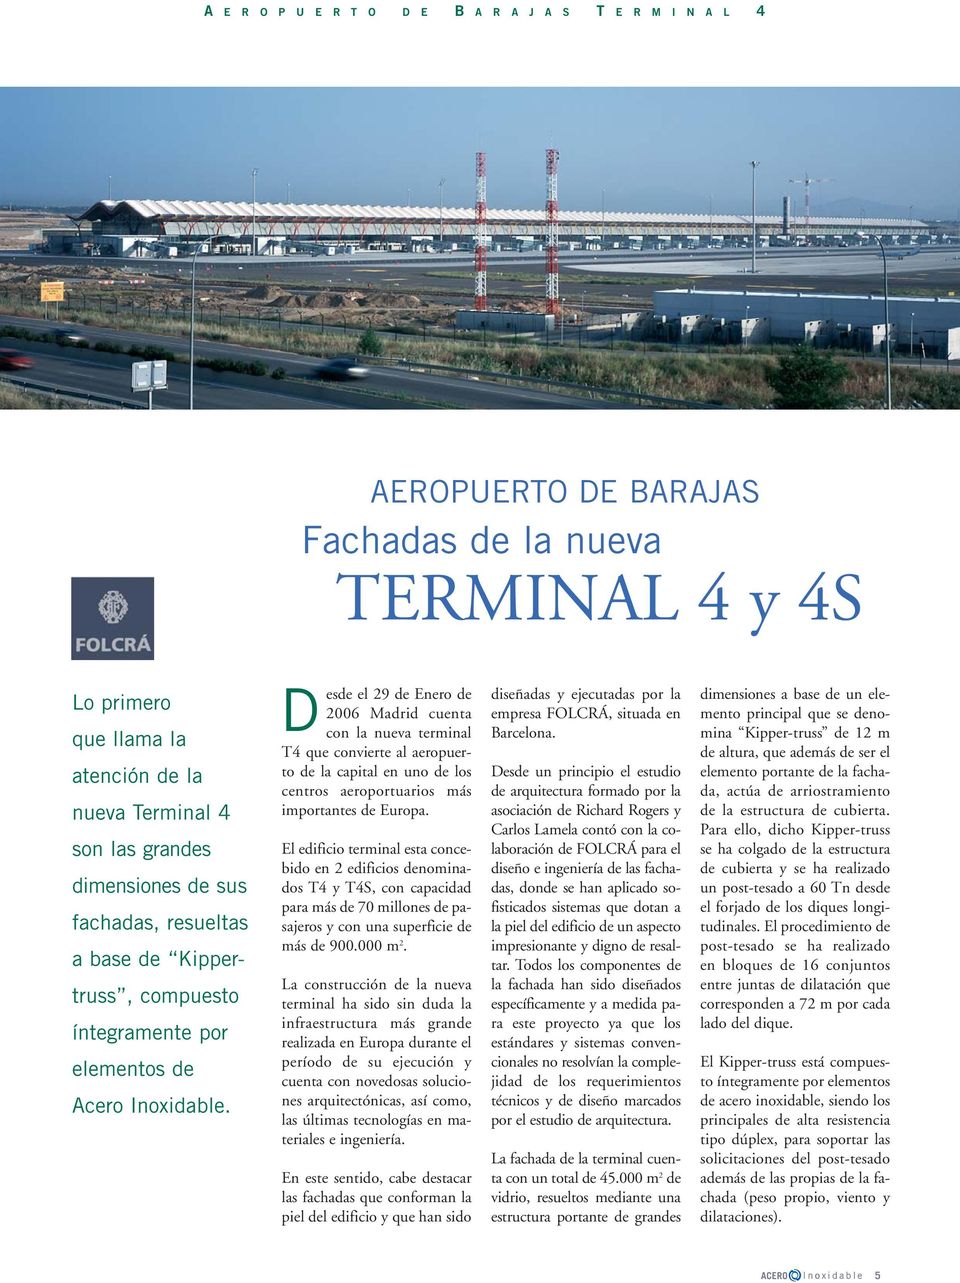 D esde el 29 de Enero de 2006 Madrid cuenta con la nueva terminal T4 que convierte al aeropuerto de la capital en uno de los centros aeroportuarios más importantes de Europa.